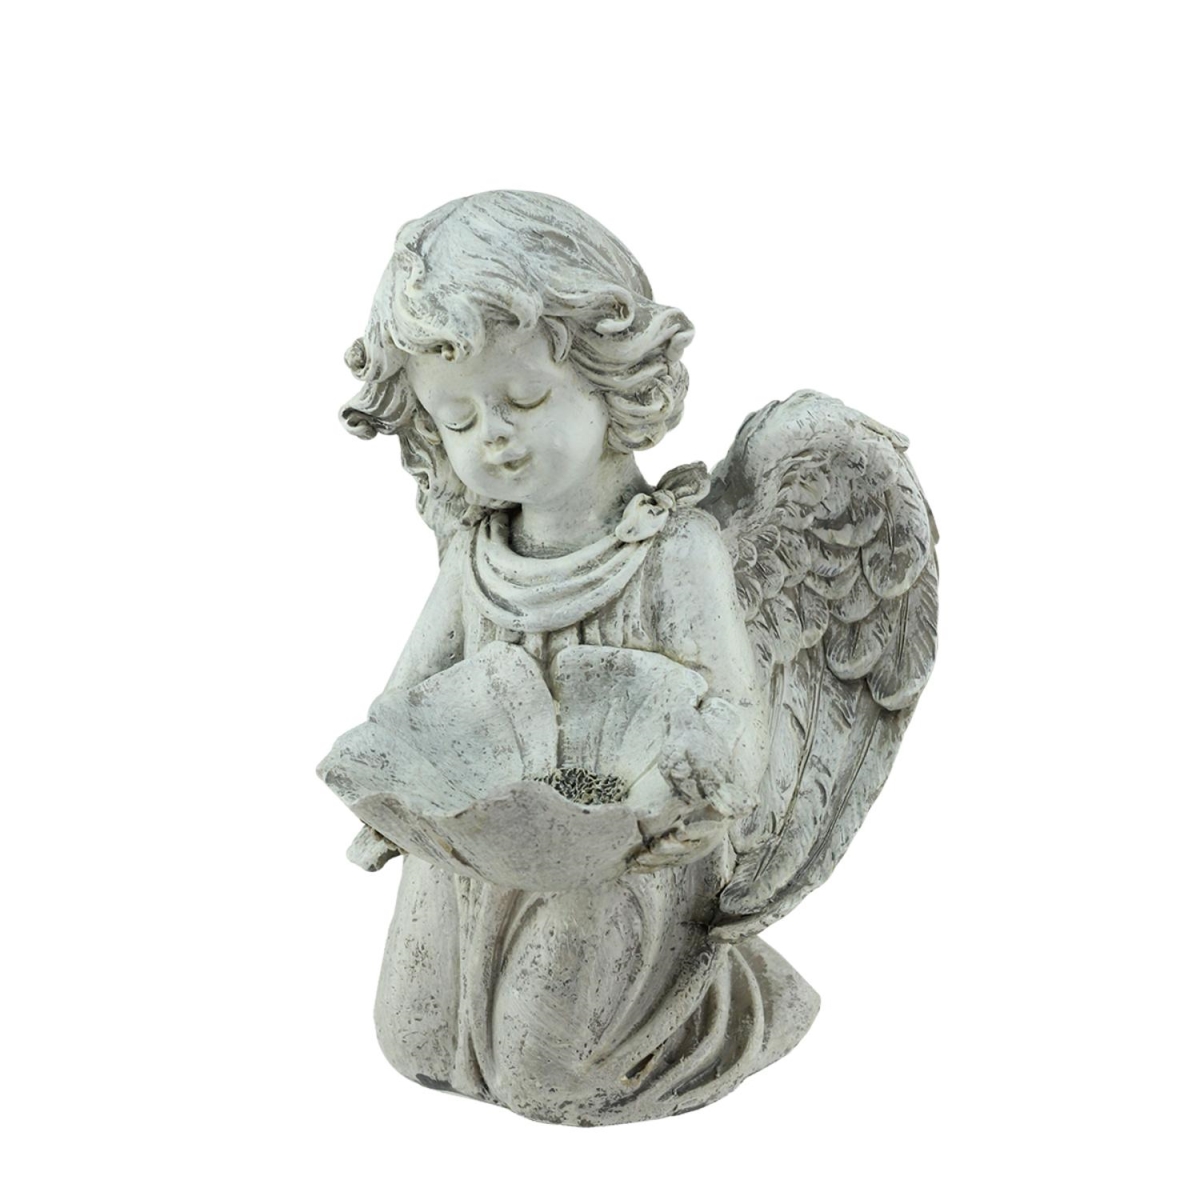 32037240 9.5 In. Heavenly Gardens Distressed Kneeling Cherub Angel Bird Feeder Outdoor Patio Garden Statue